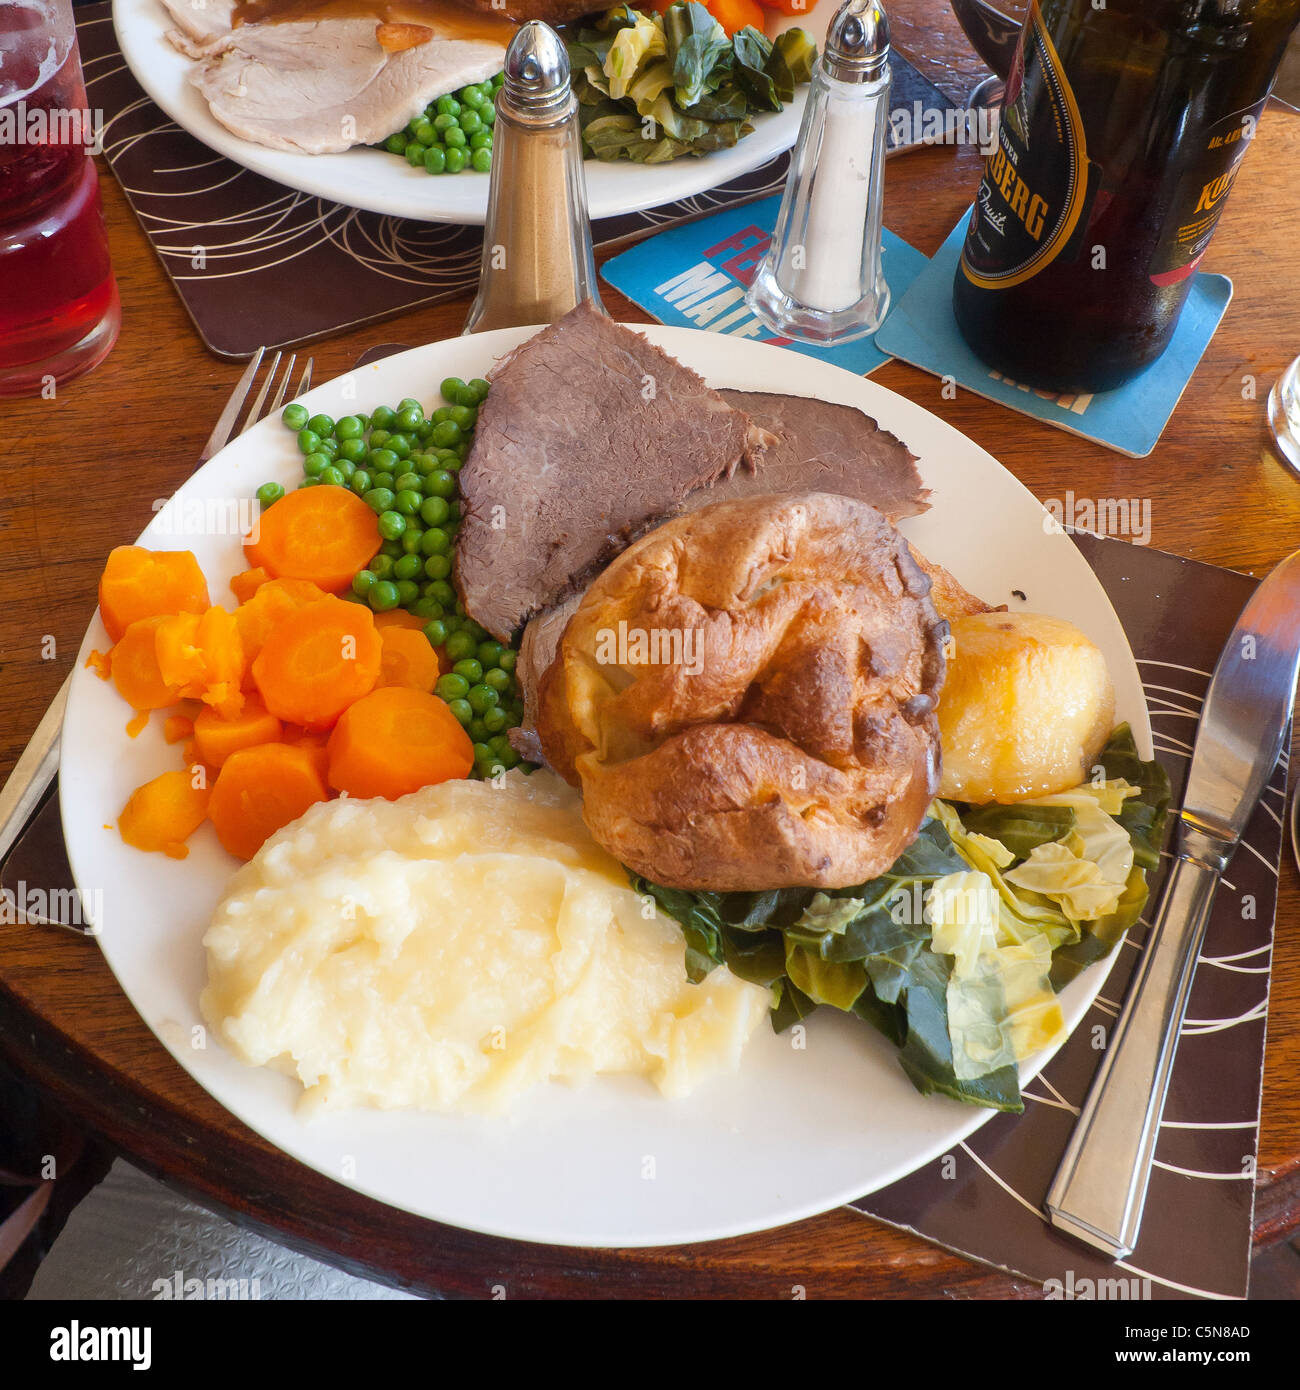 Domingo Almuerzo tradicional inglesa roast beef y Yorkshire pudding en un pub Foto de stock